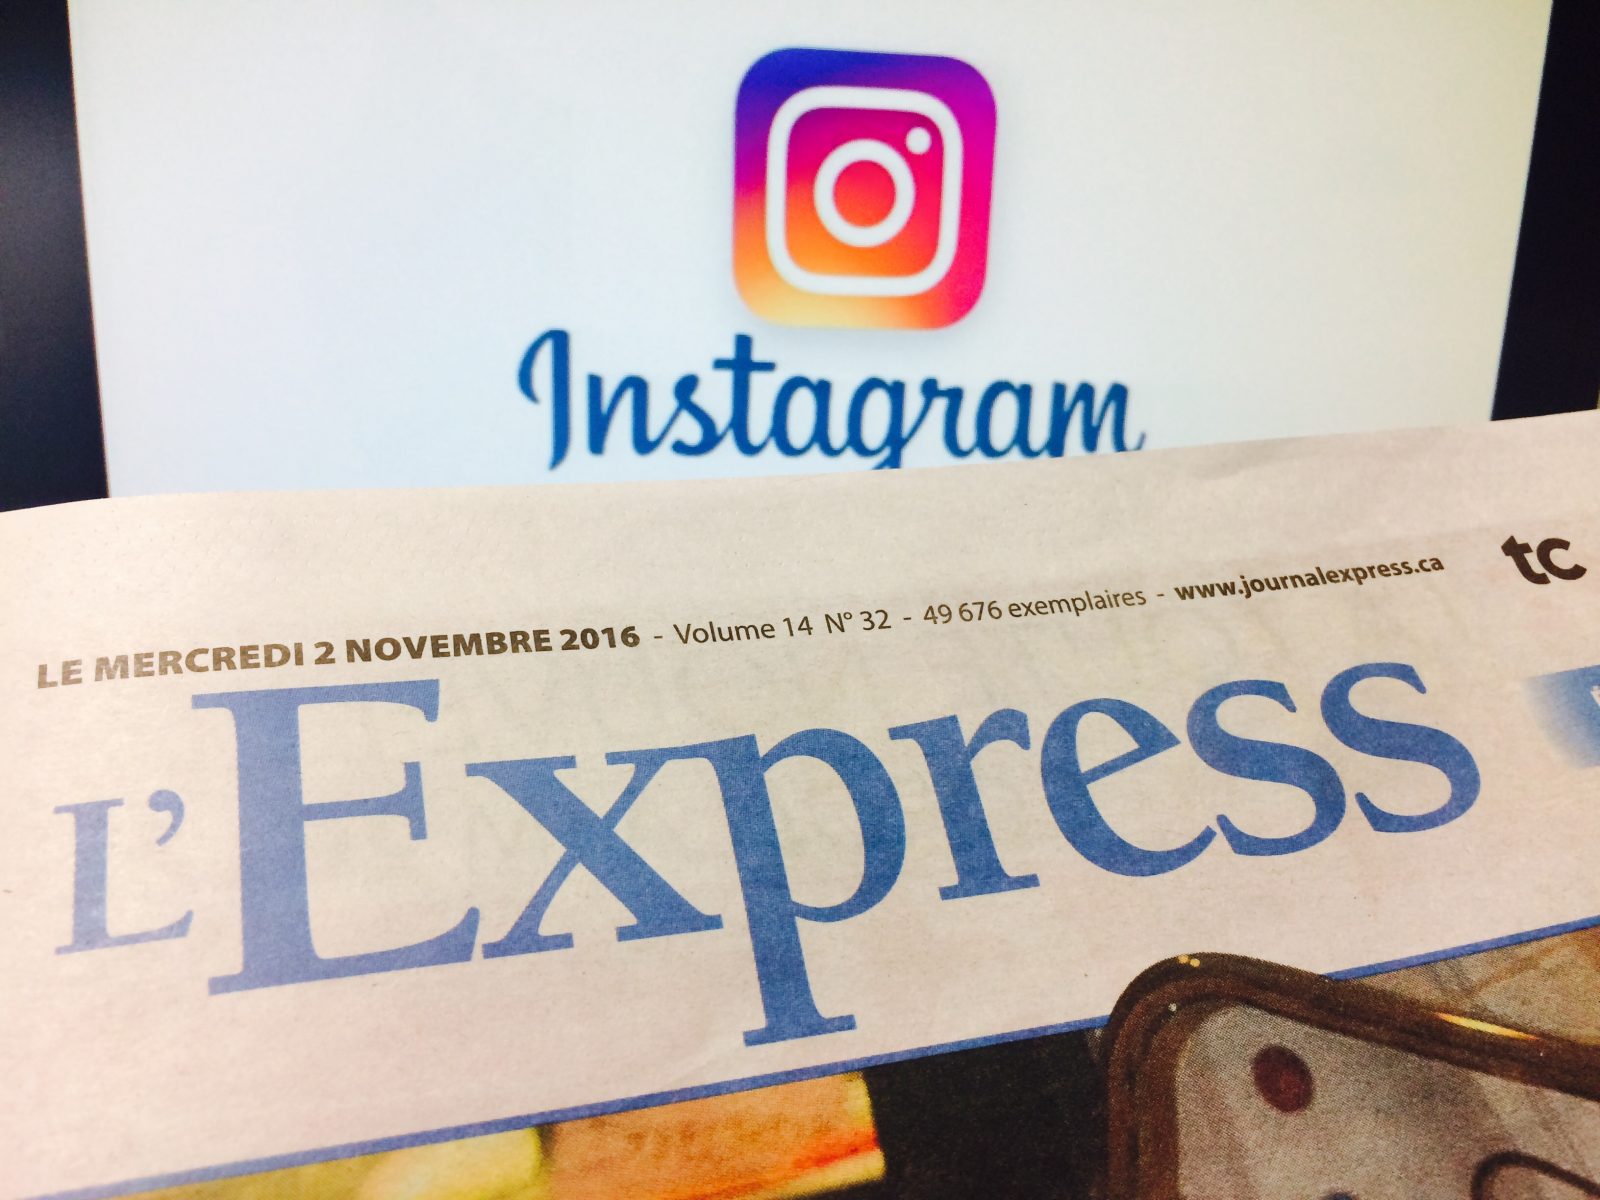 Suivez L’Express sur Instagram